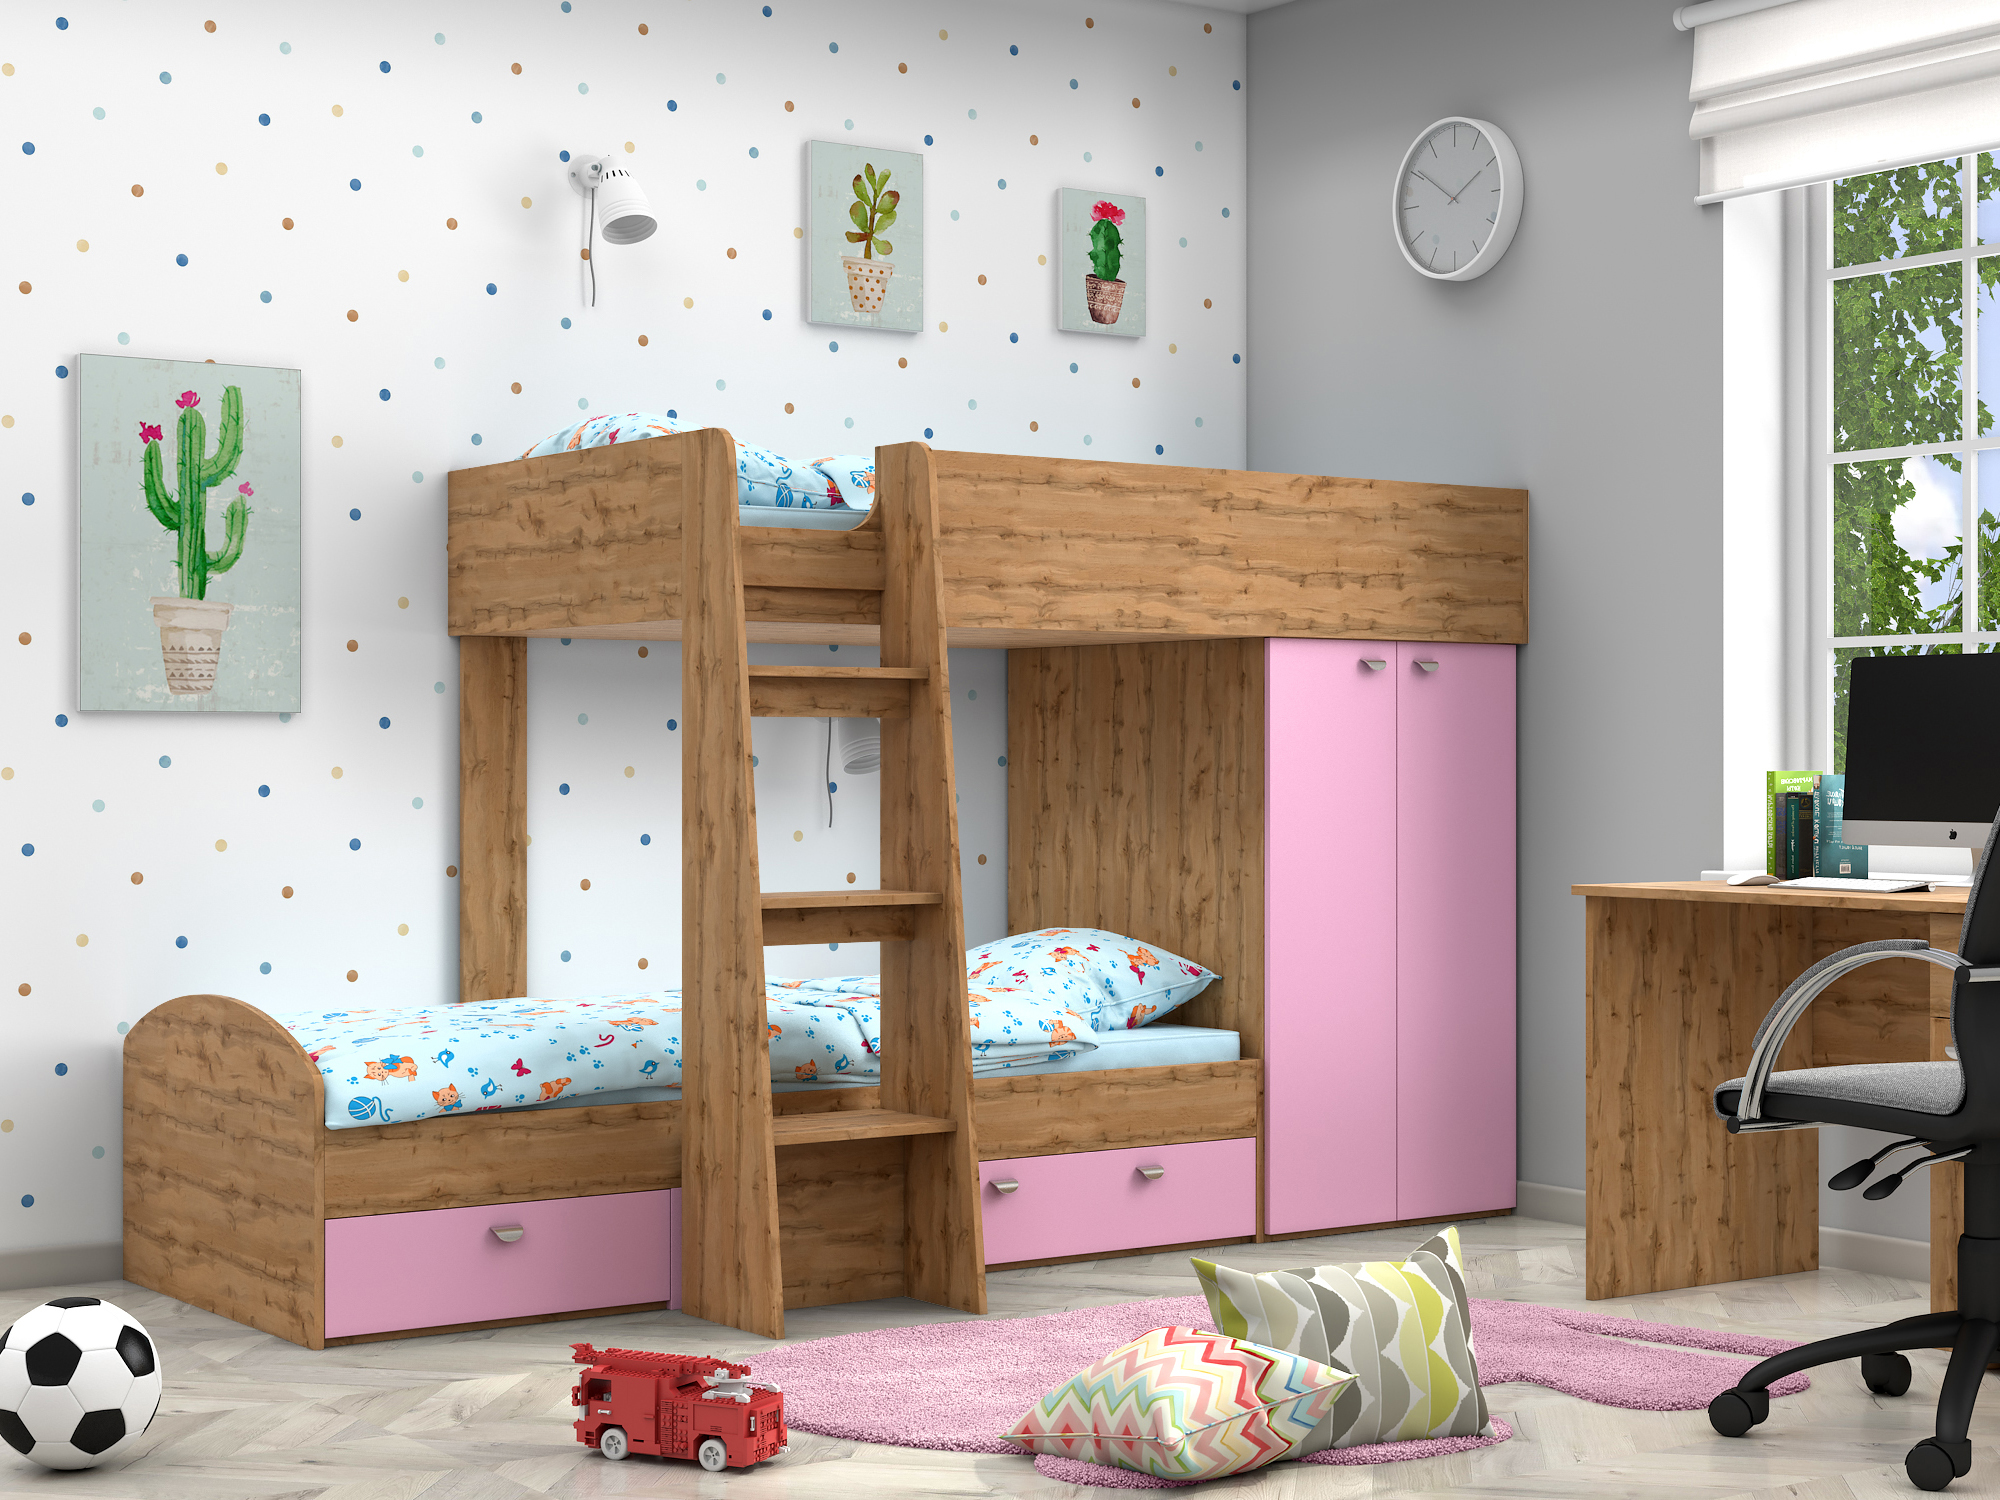 Двухъярусная кровать Golden Kids-2 (90х200) Розовый, Бежевый, ЛДСП двухъярусная кровать golden kids 2 90х200 дуб вотан бежевый лдсп